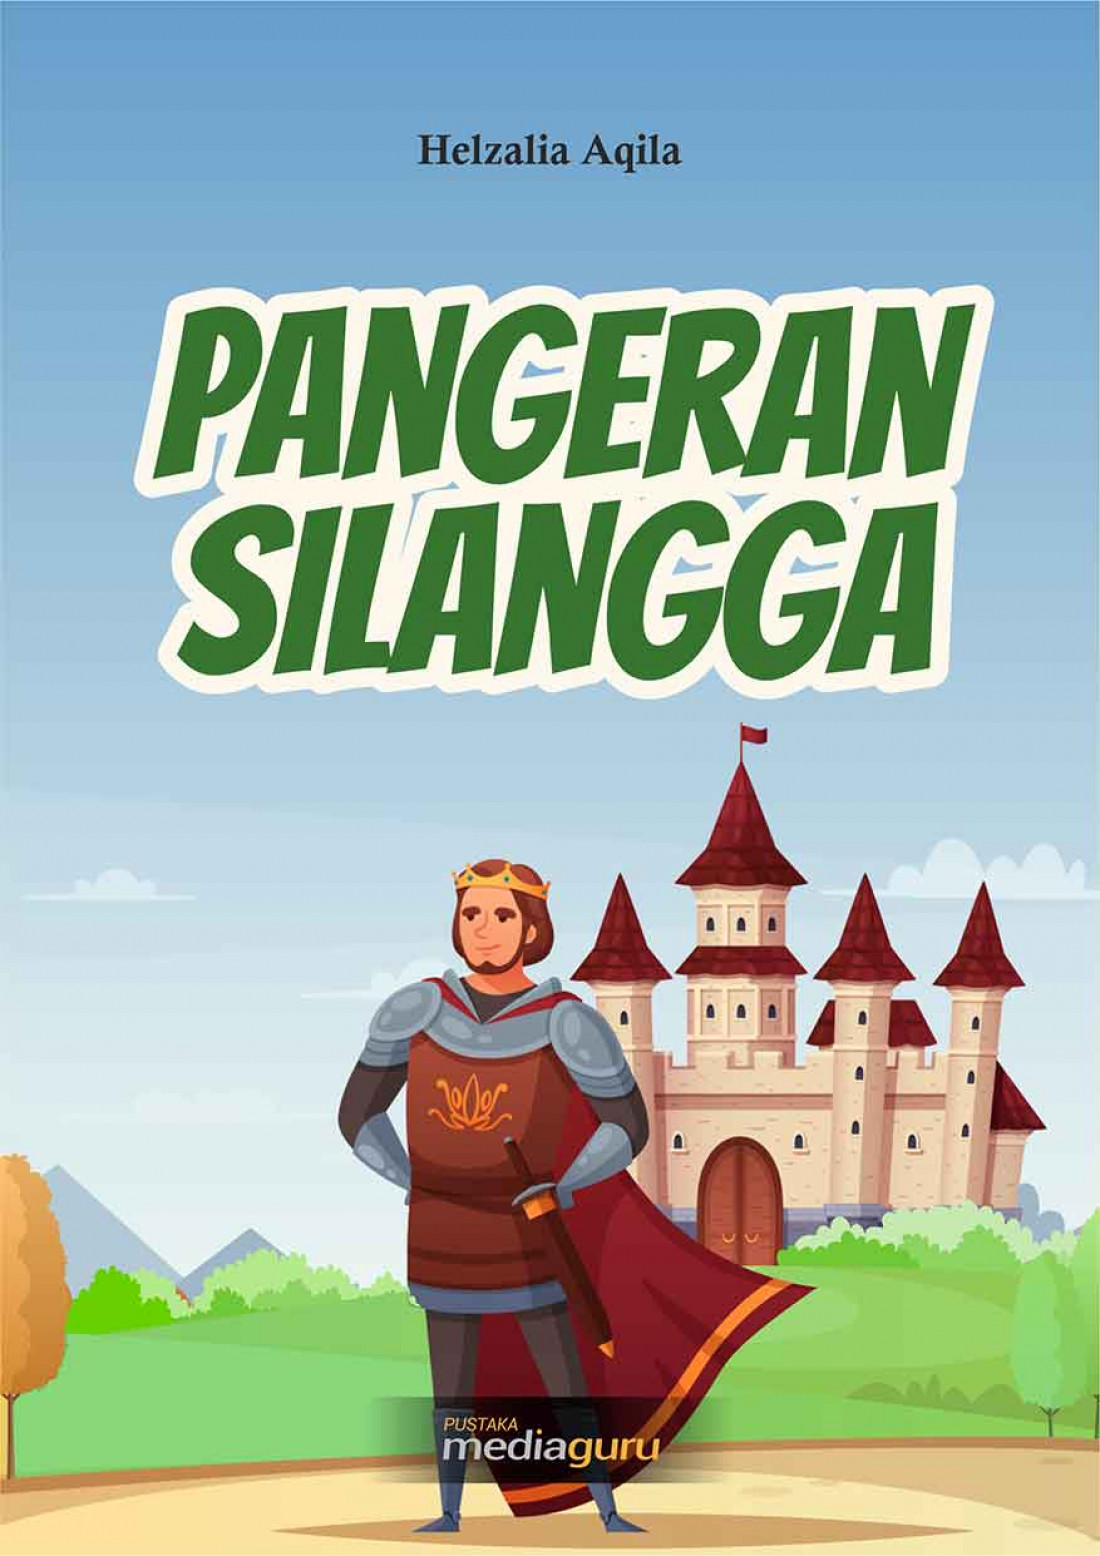 Pangeran Silangga